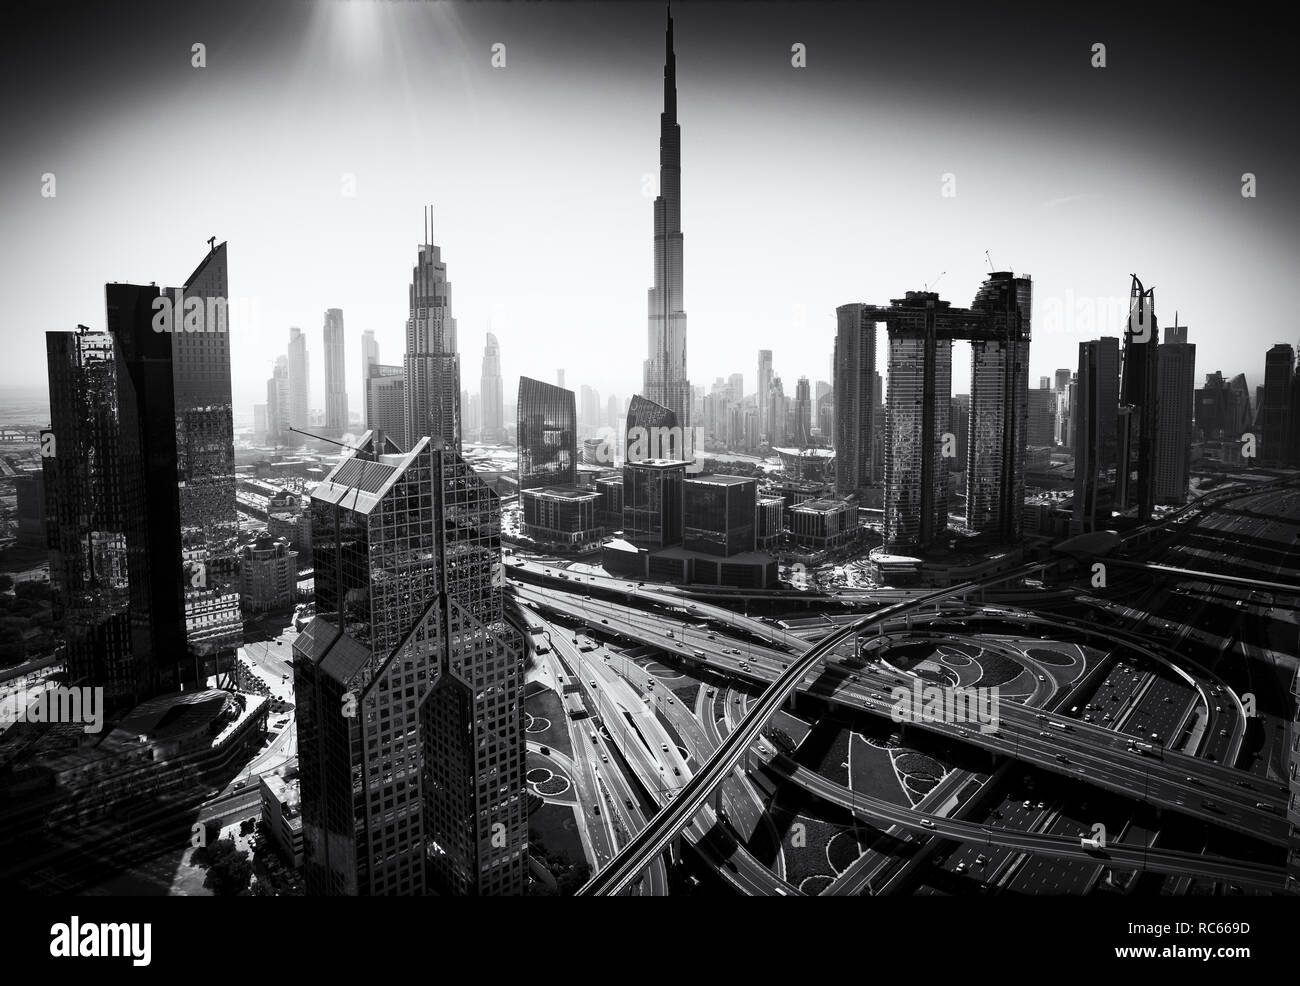 Blick auf die Skyline von Downtown District in Dubai mit dem Burj Khalifa tower prominent, Vereinigte Arabische Emirate Stockfoto